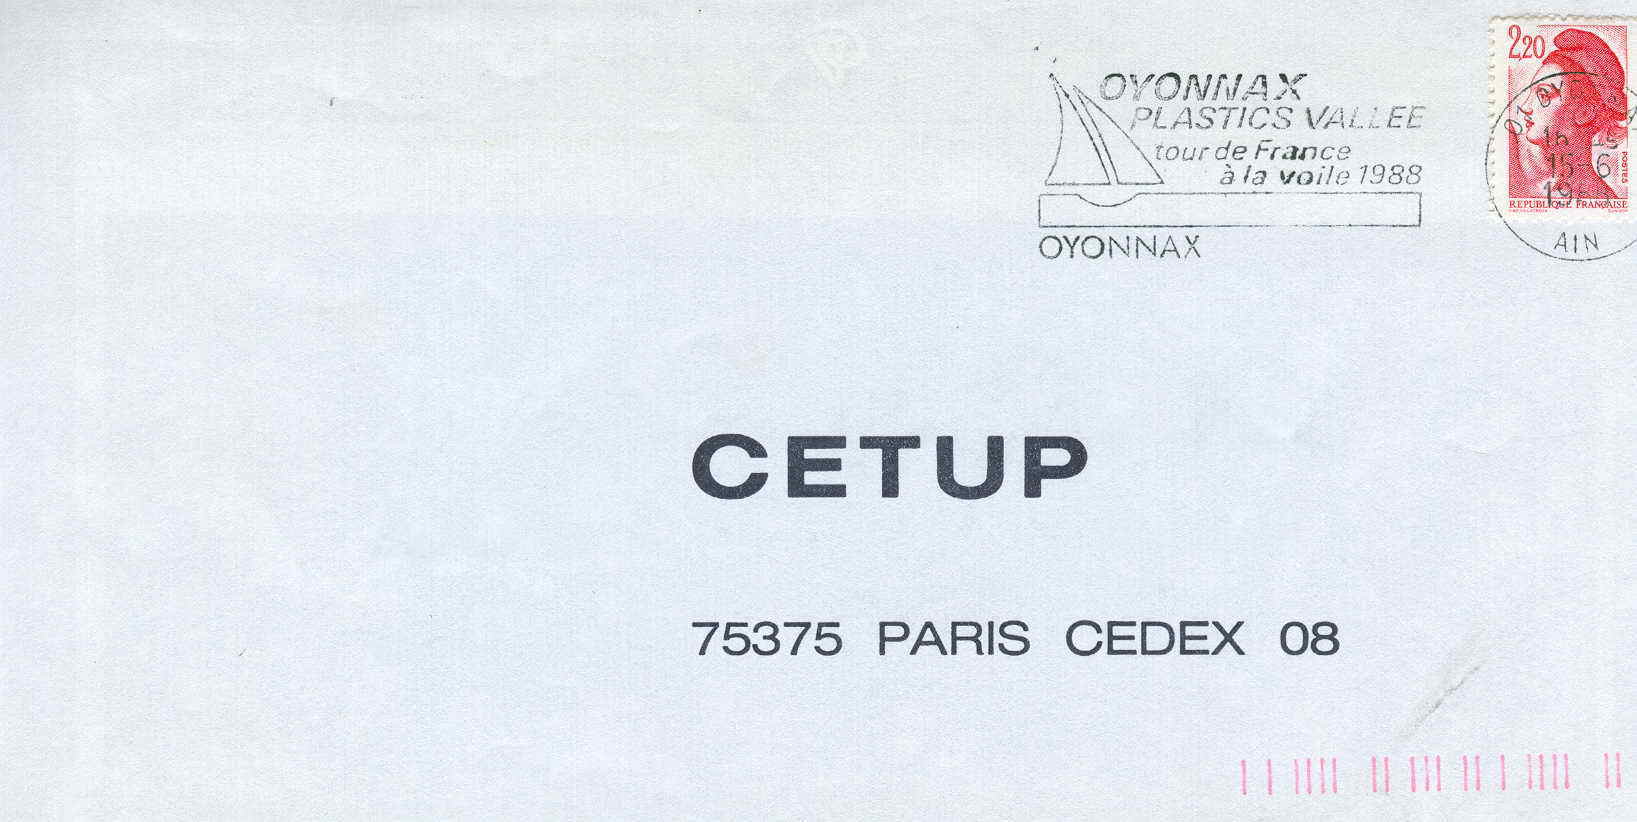 VOILE OBLITERATION TEMPORAIRE TOUR DE FRANCE A LA VOILE 1988 OYONNAX - Sailing